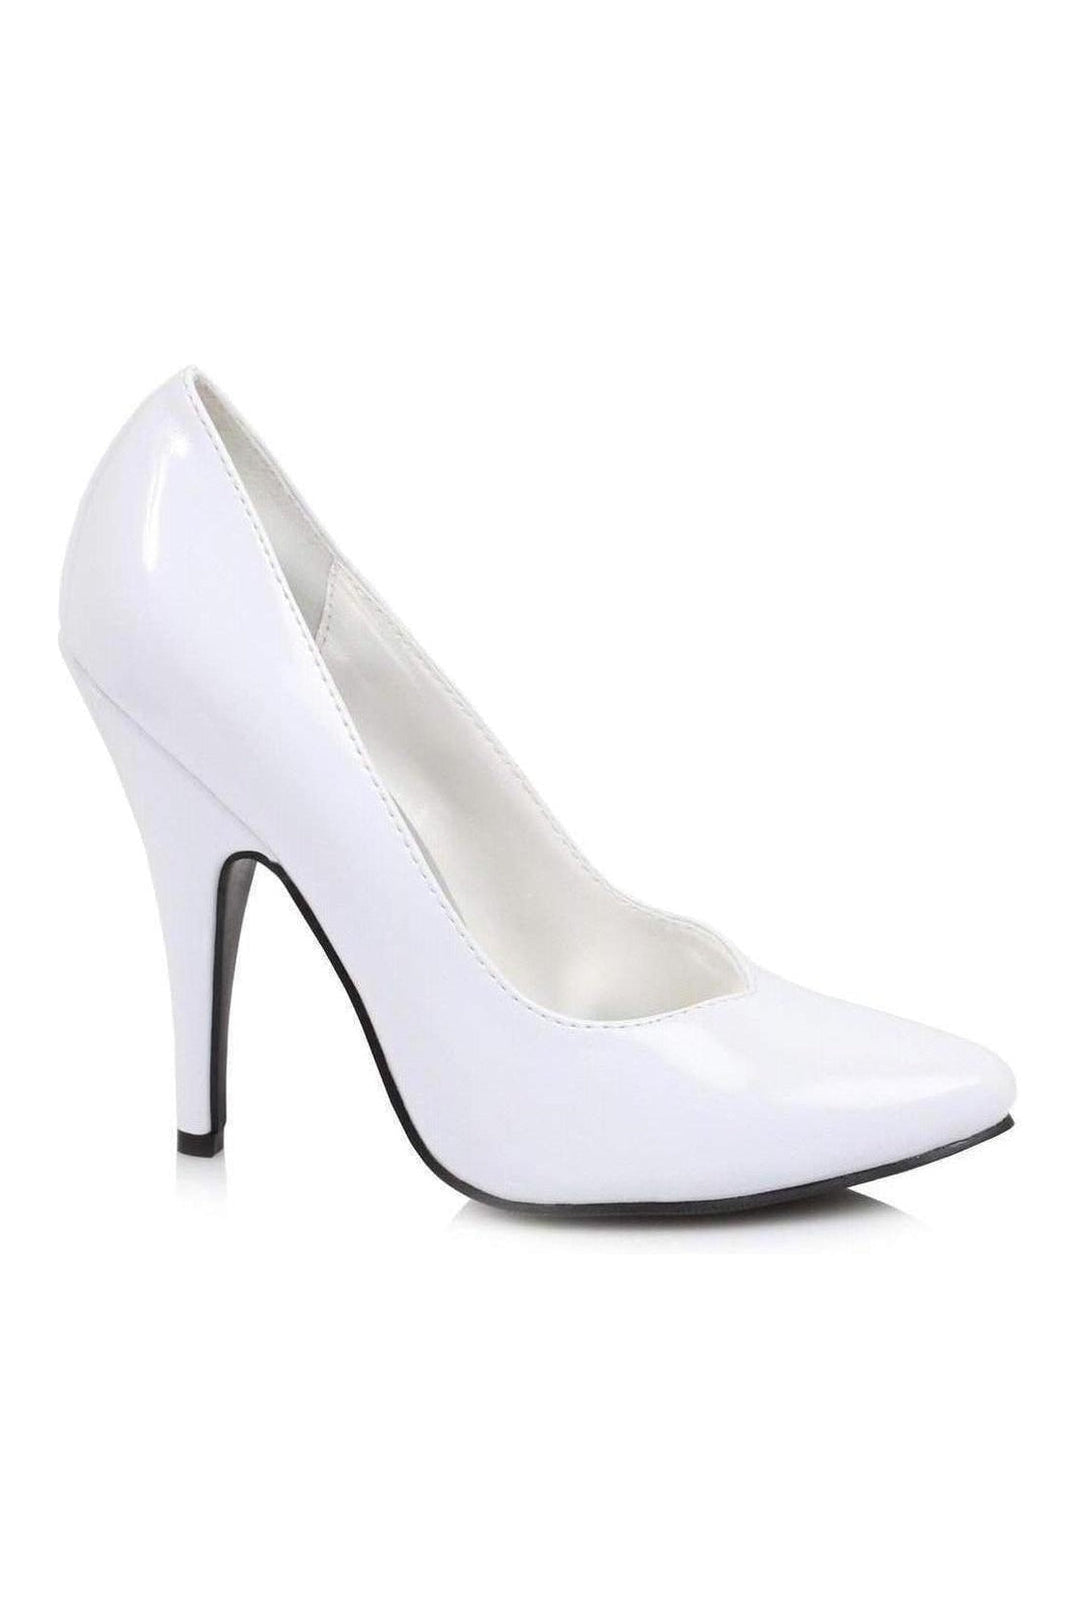 8220 Pump | White Patent-Ellie Shoes-SEXYSHOES.COM